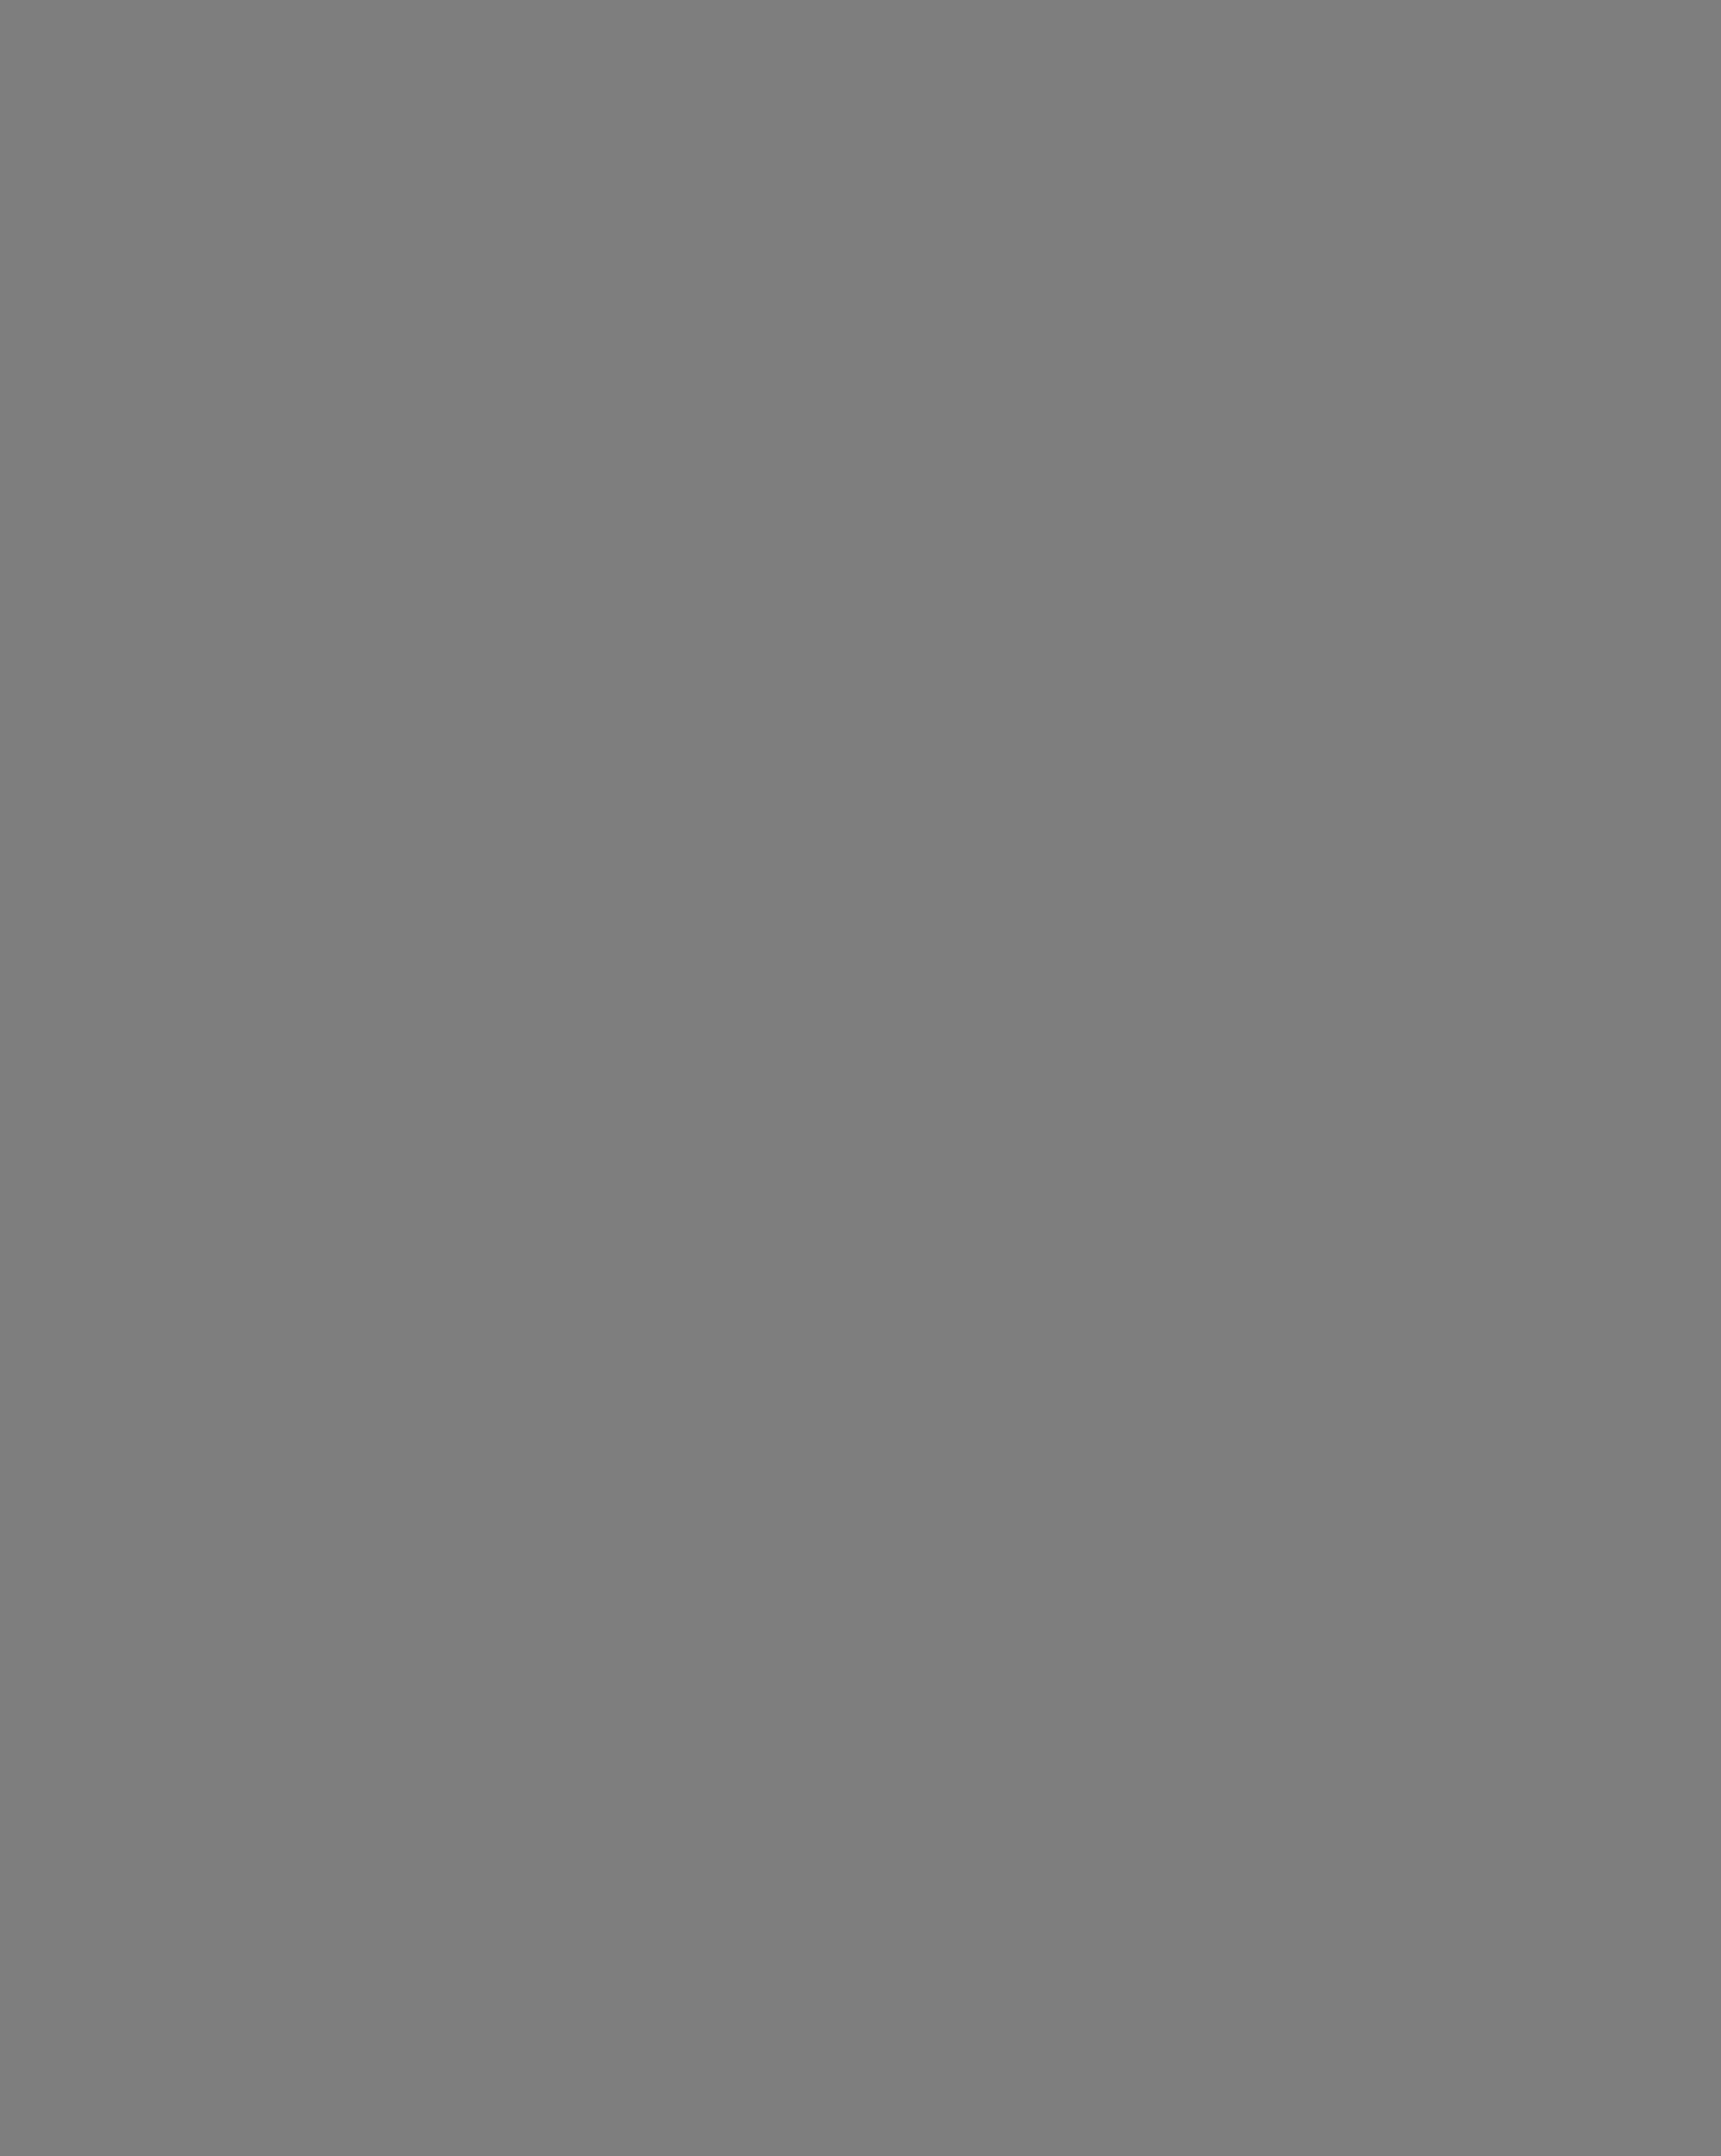 Лев Прыгунов во время выступления перед рыбаками. Камчатская область, 1981 год. Фотография: Игорь Вайнштейн / Фотохроника ТАСС